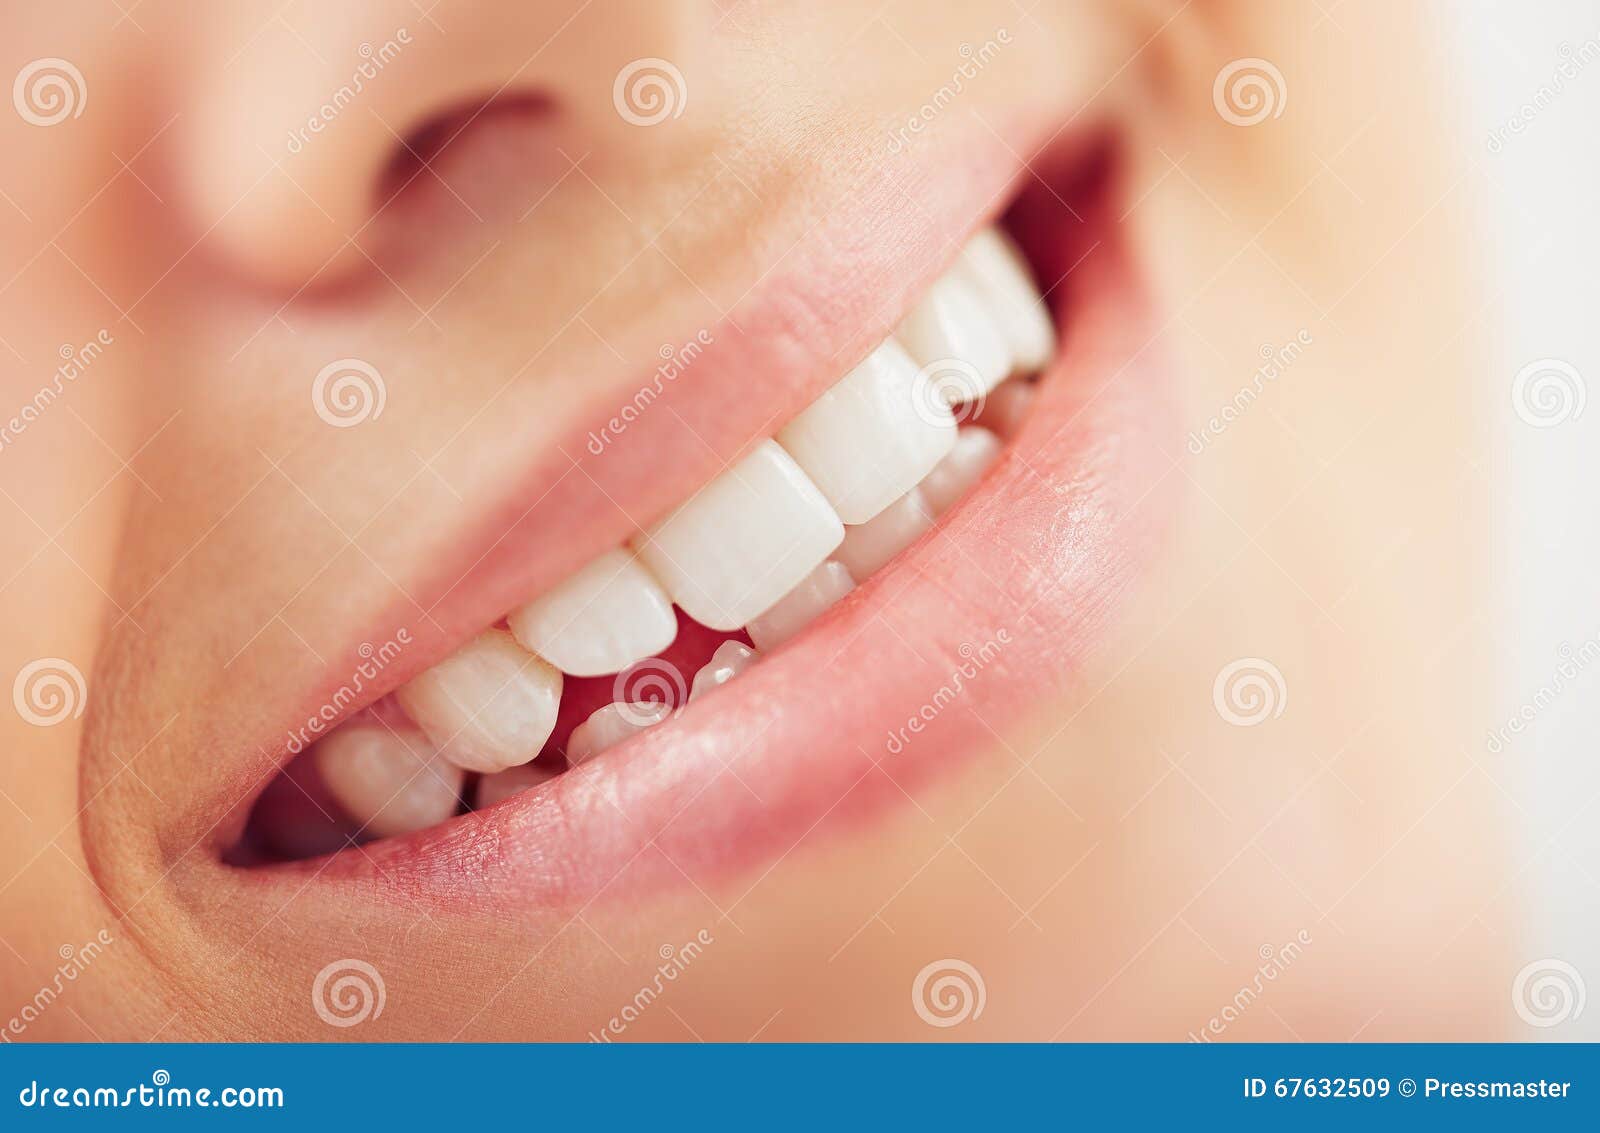 暴牙，拔牙矯正，黑三角矯正案例 | 寬禾口腔顎面外科牙醫診所